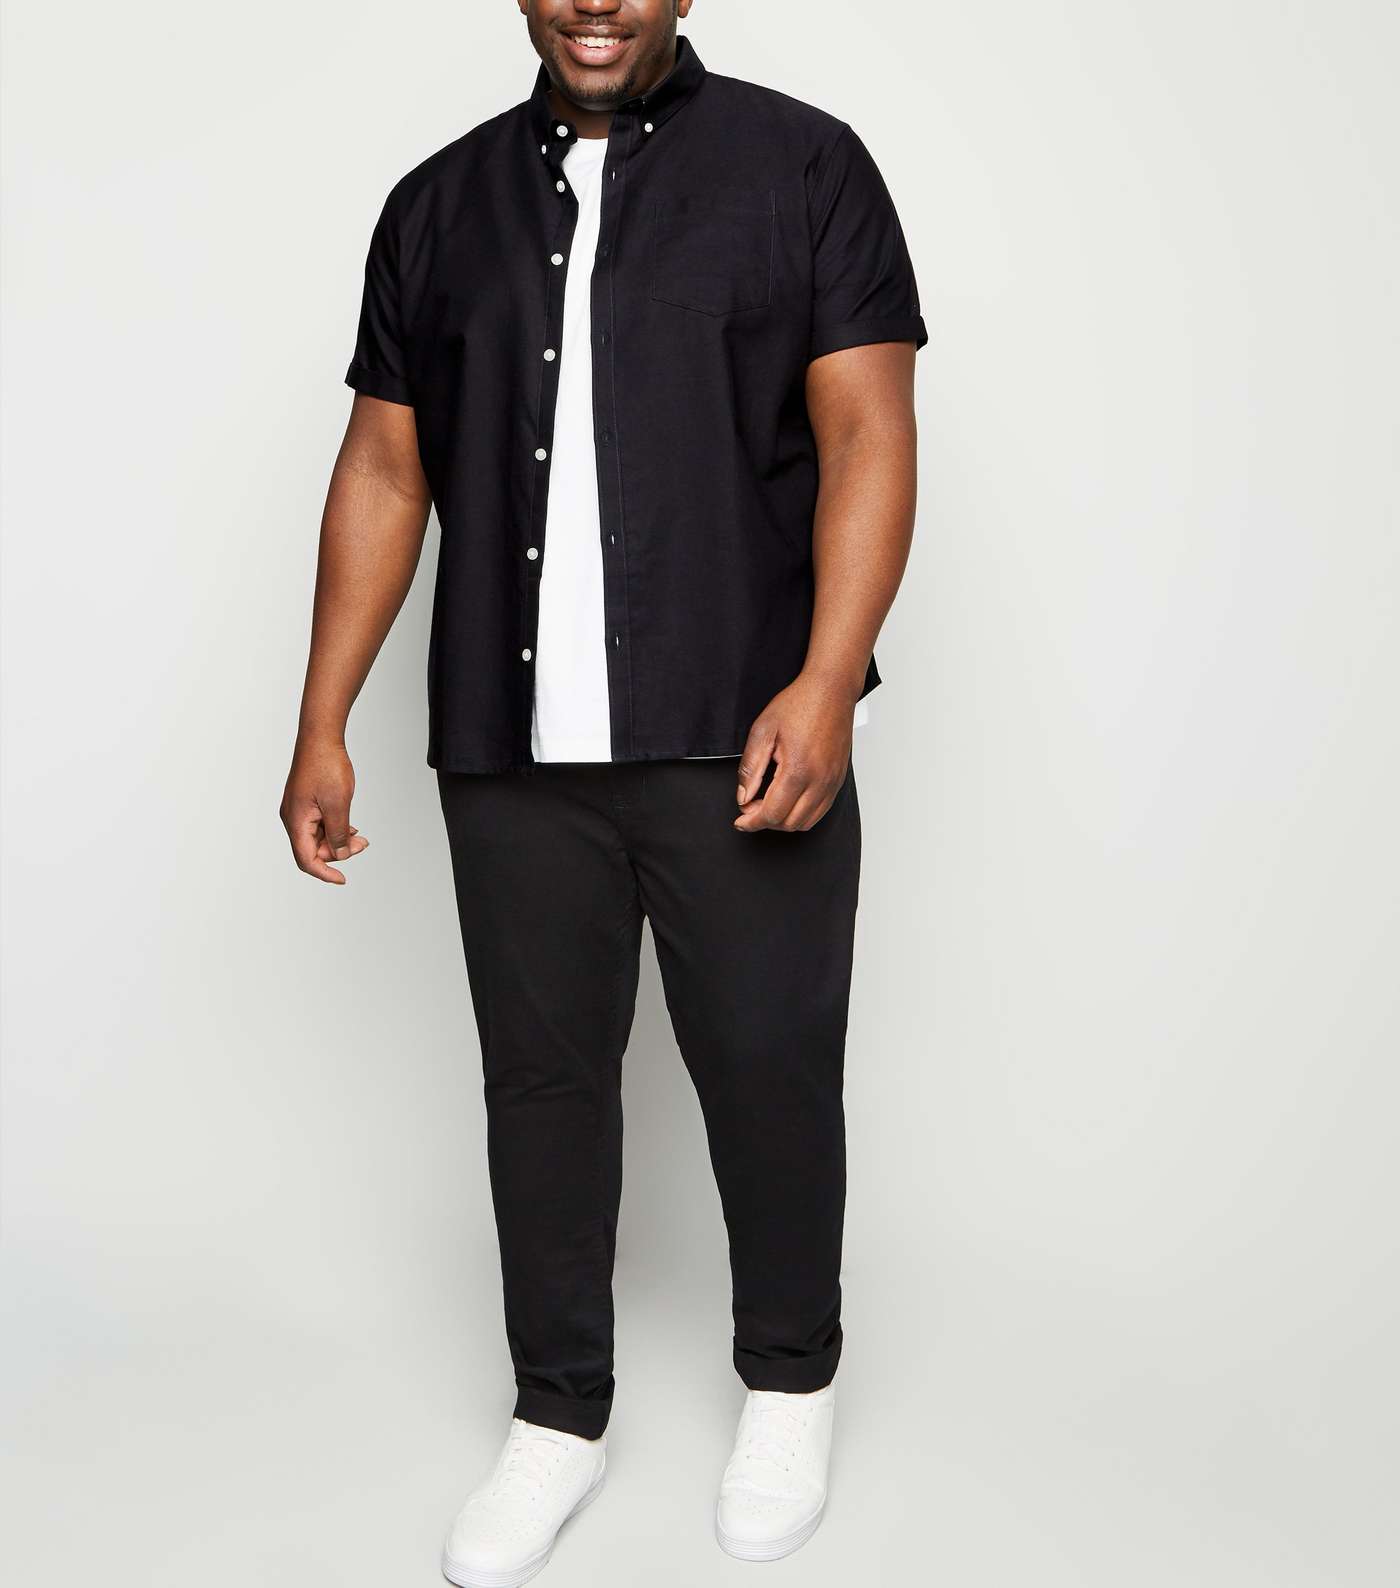 Plus Size Black Short Sleeve Oxford Shirt Image 2